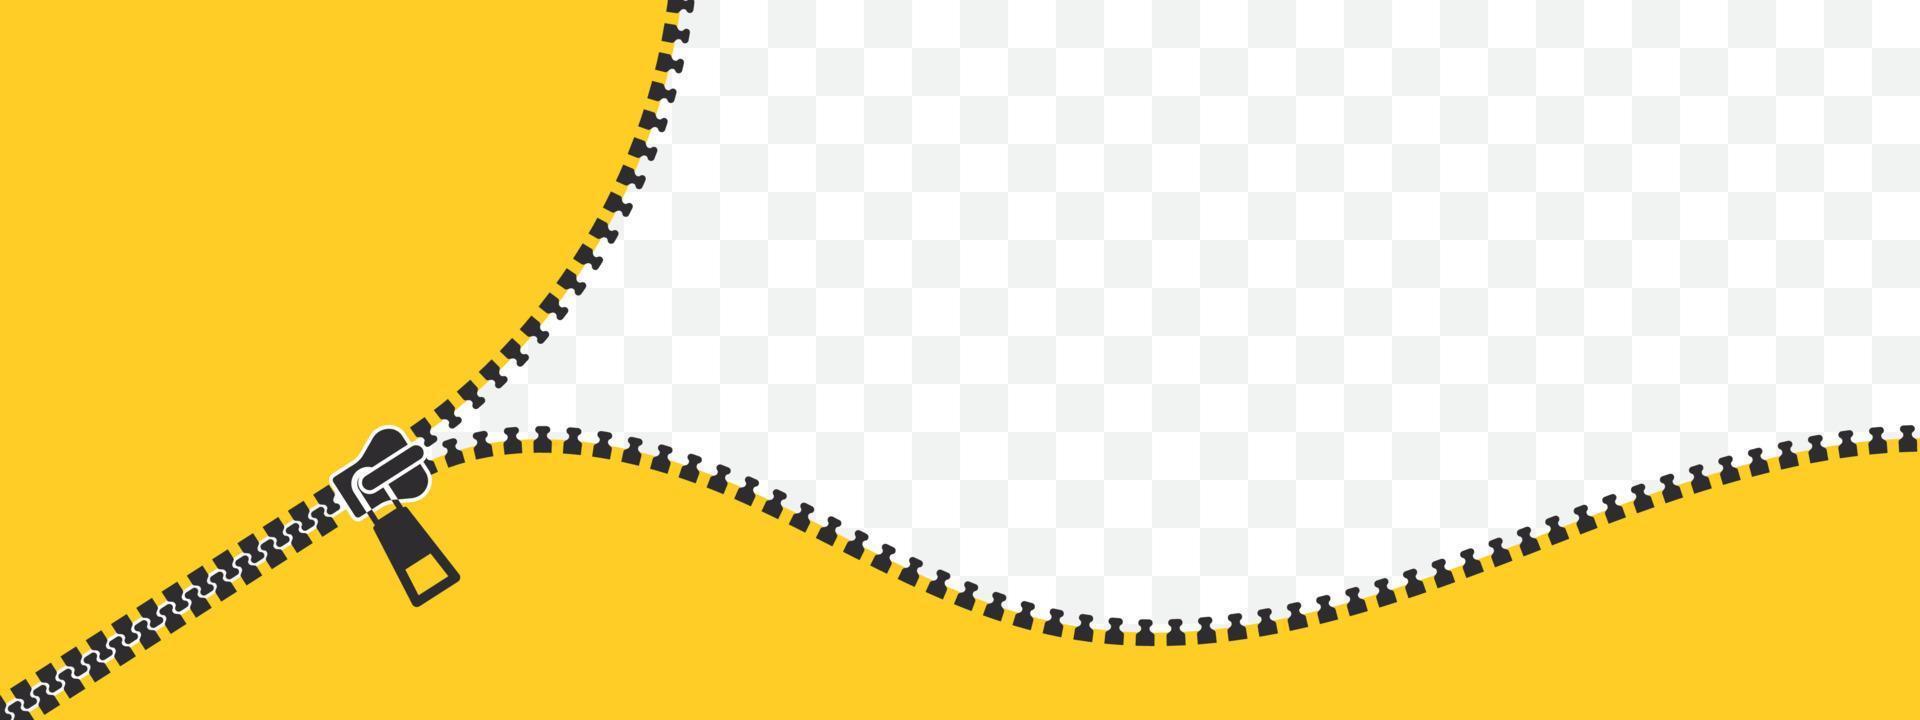 casier zip. fermeture à glissière fermée et ouverte. zip fond jaune. illustration vectorielle vecteur